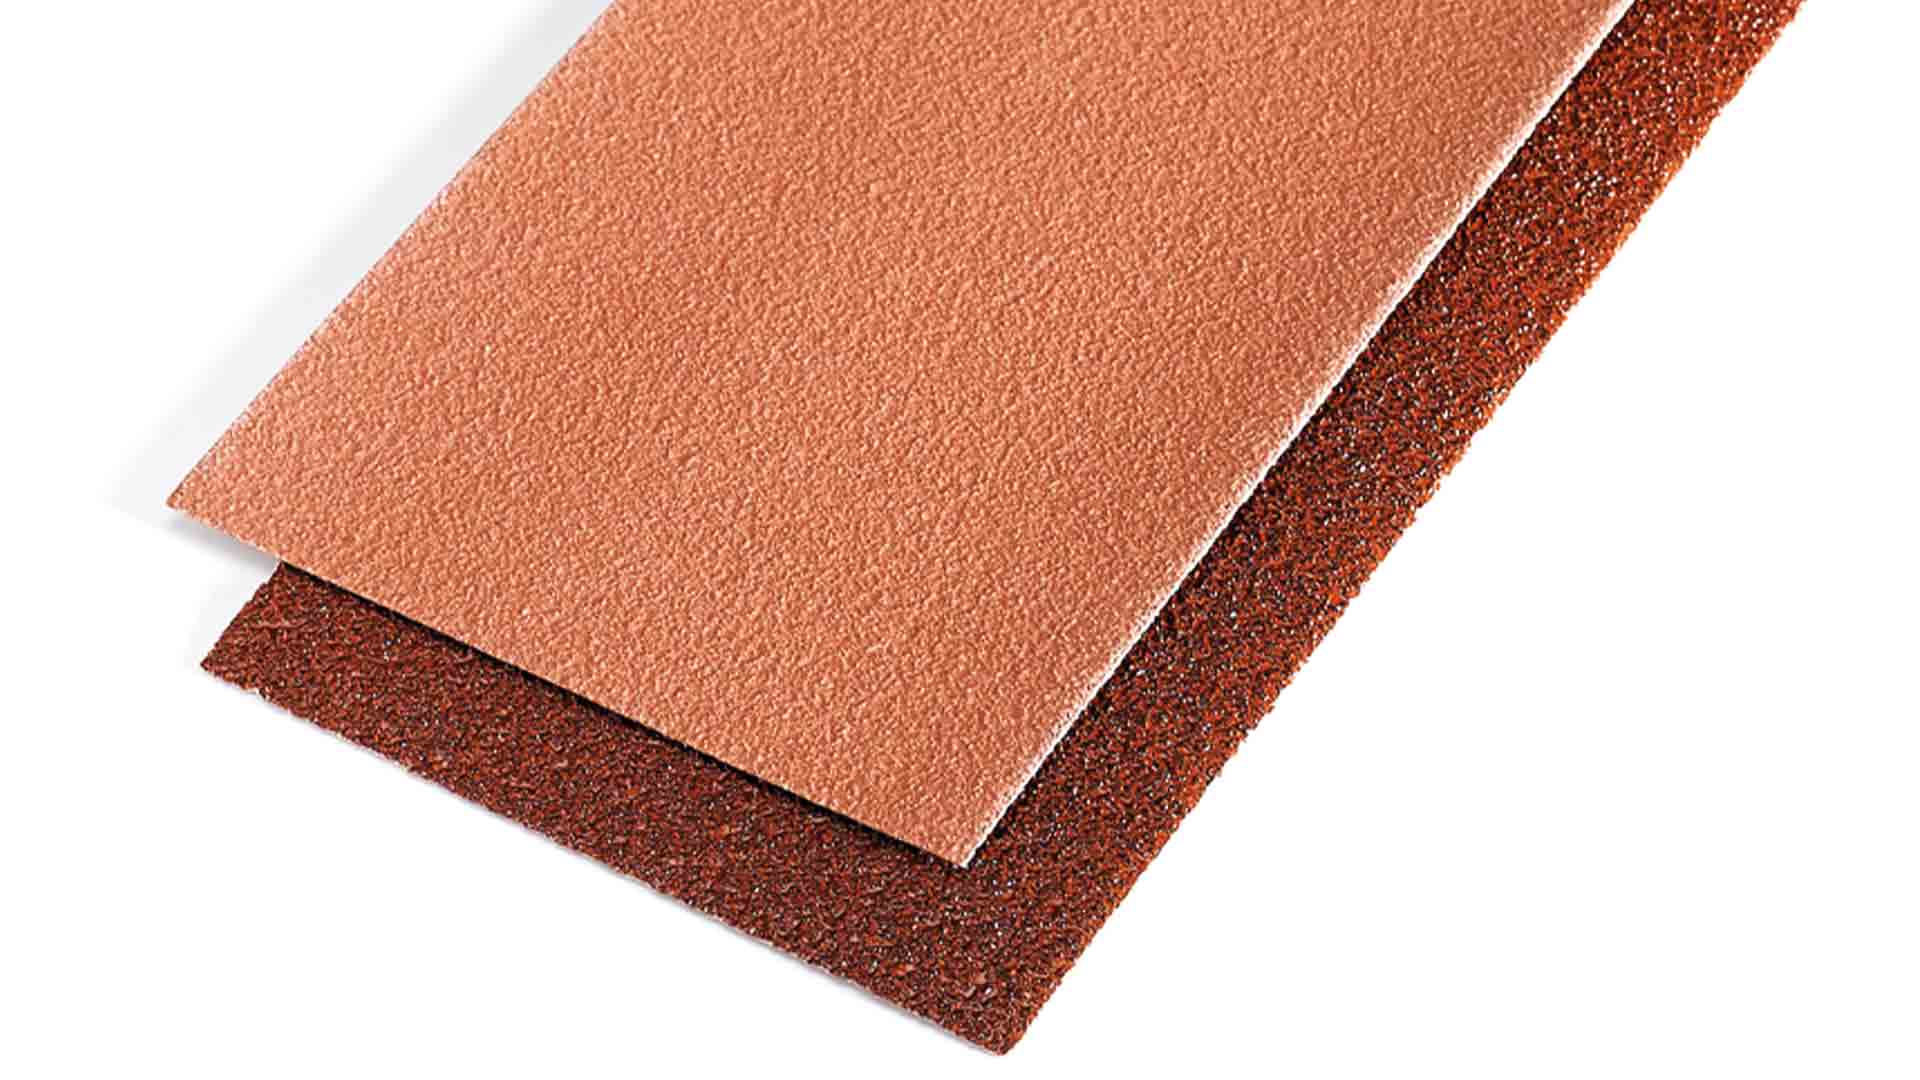 INDASA Abrasives Rhynalox/Rhynodry Red Line sheet close up